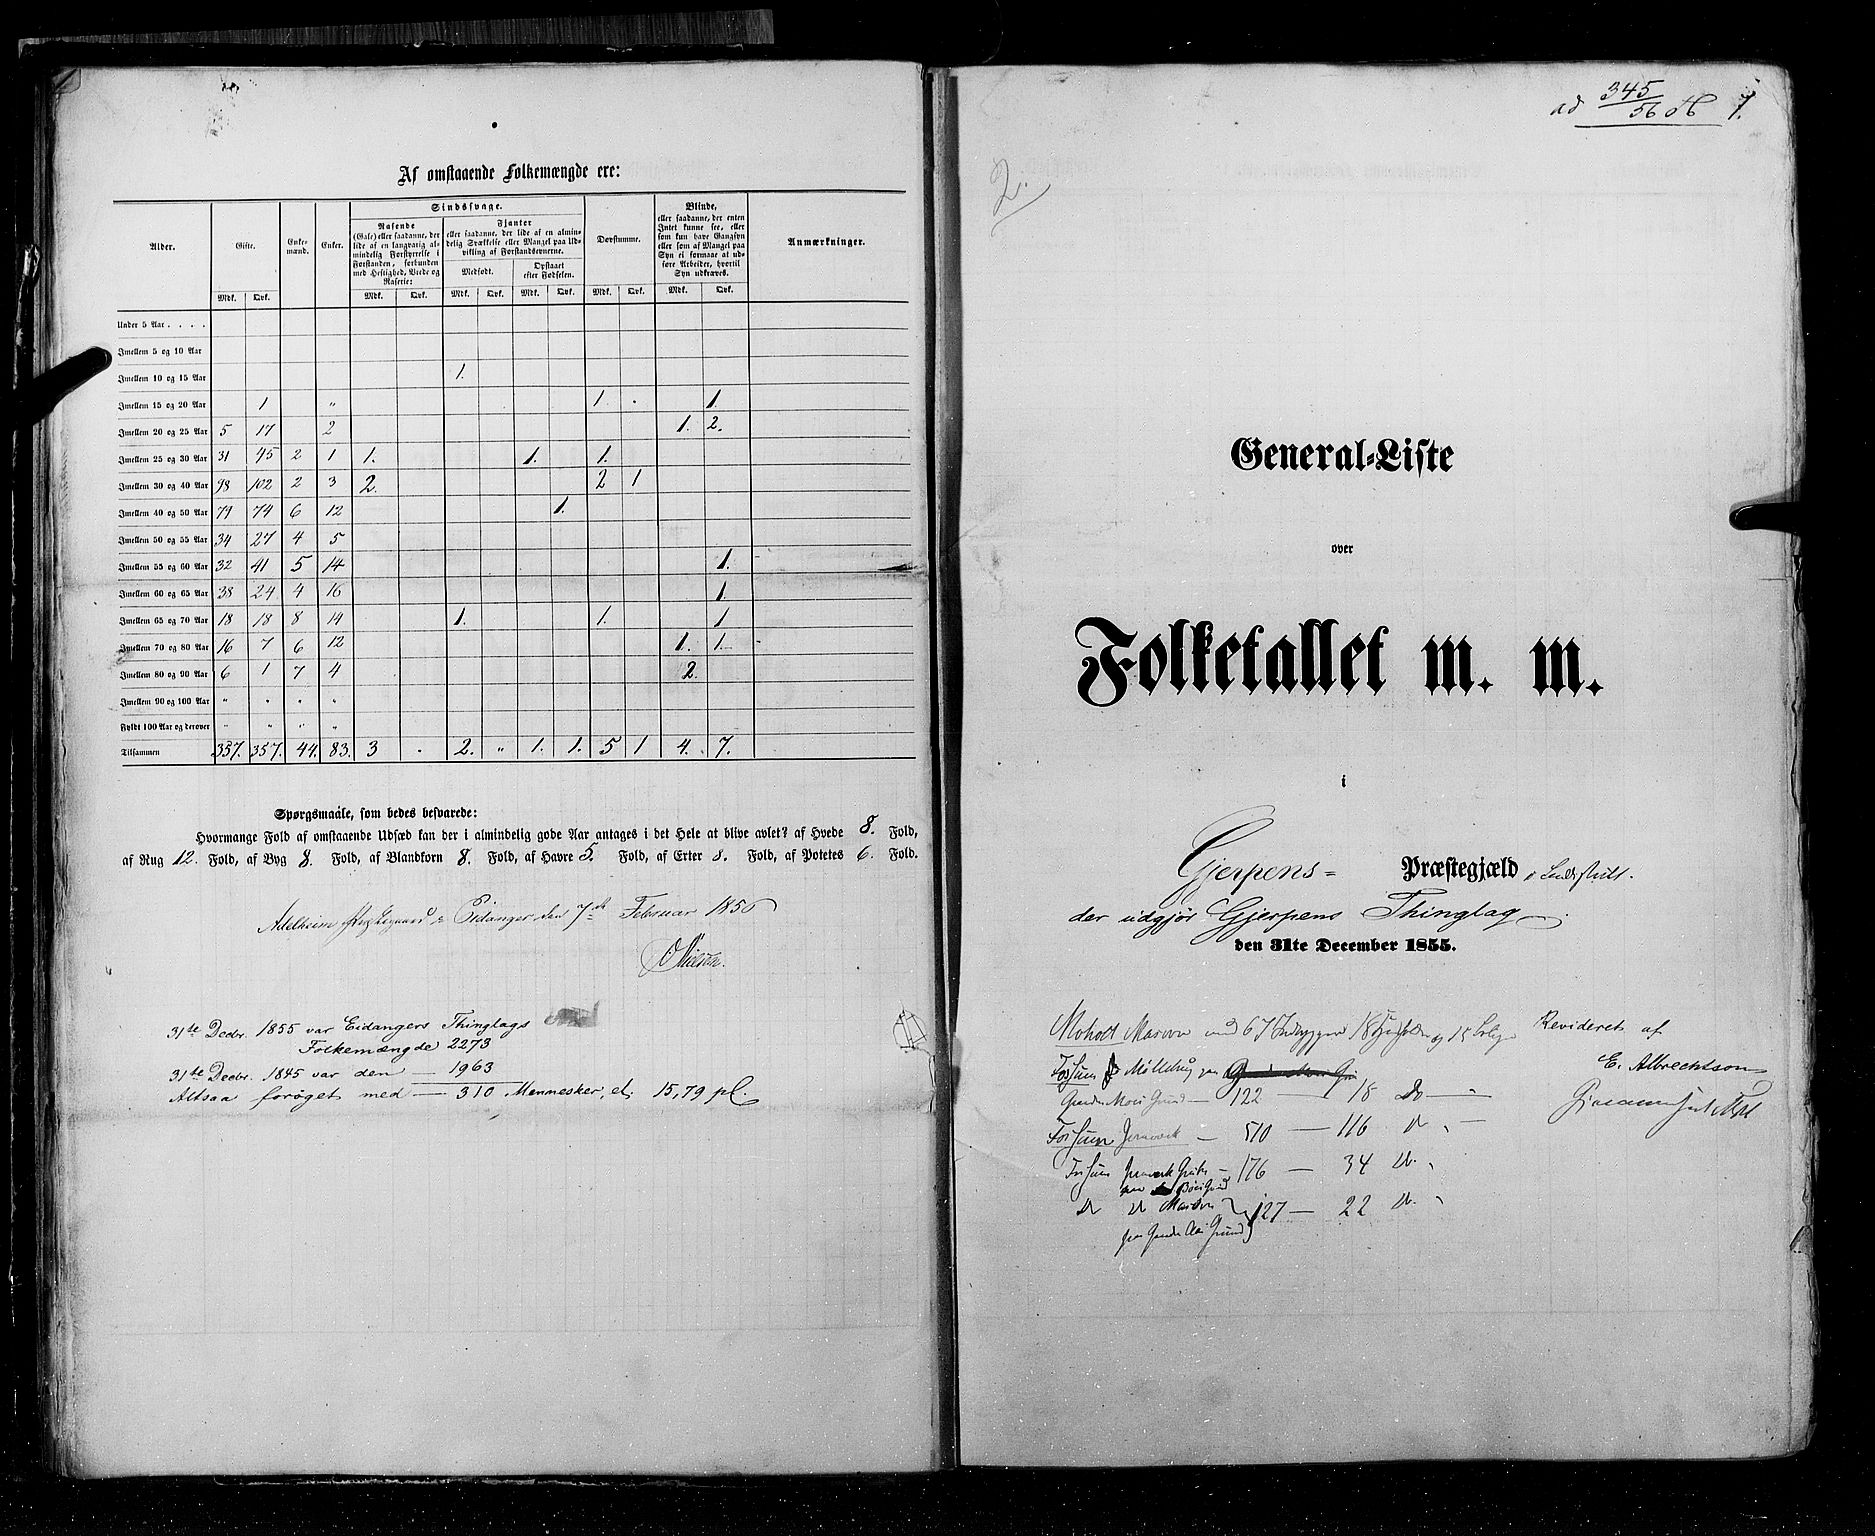 RA, Census 1855, vol. 3: Bratsberg amt, Nedenes amt og Lister og Mandal amt, 1855, p. 7